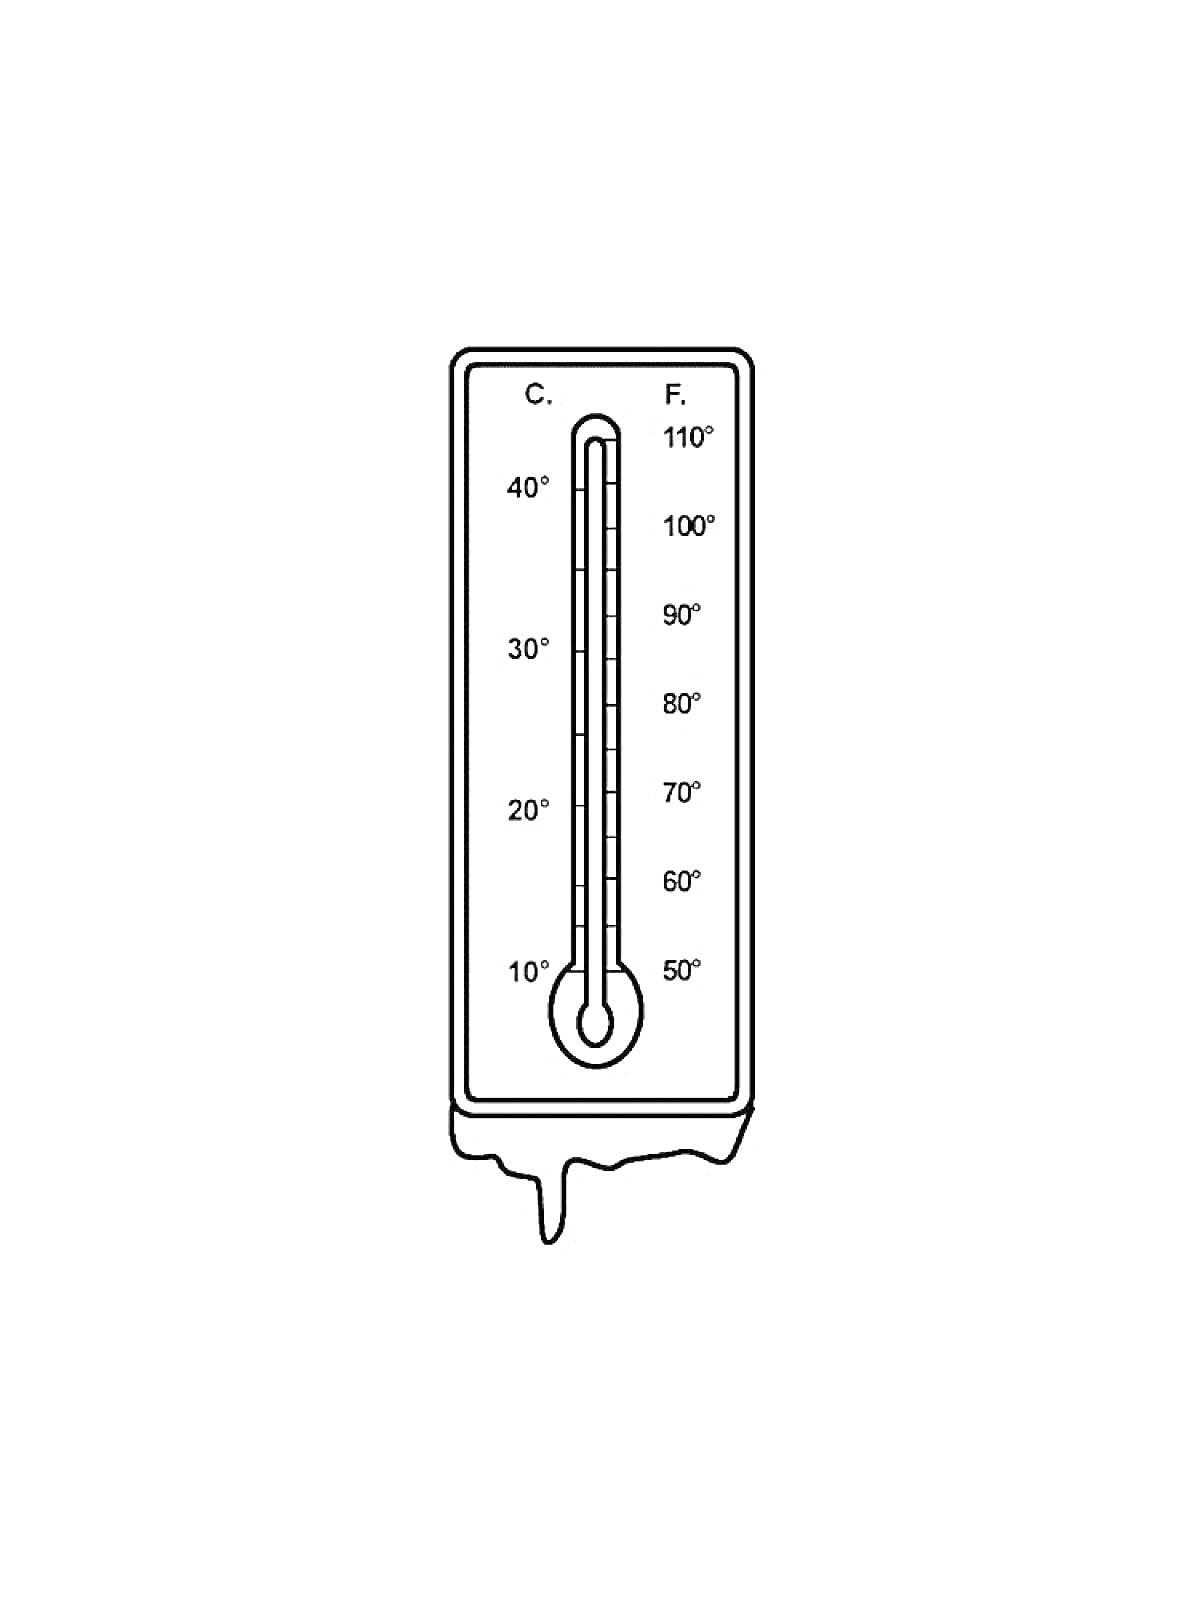 Раскраска Градусник с измерительной шкалой в градусах Цельсия и Фаренгейта